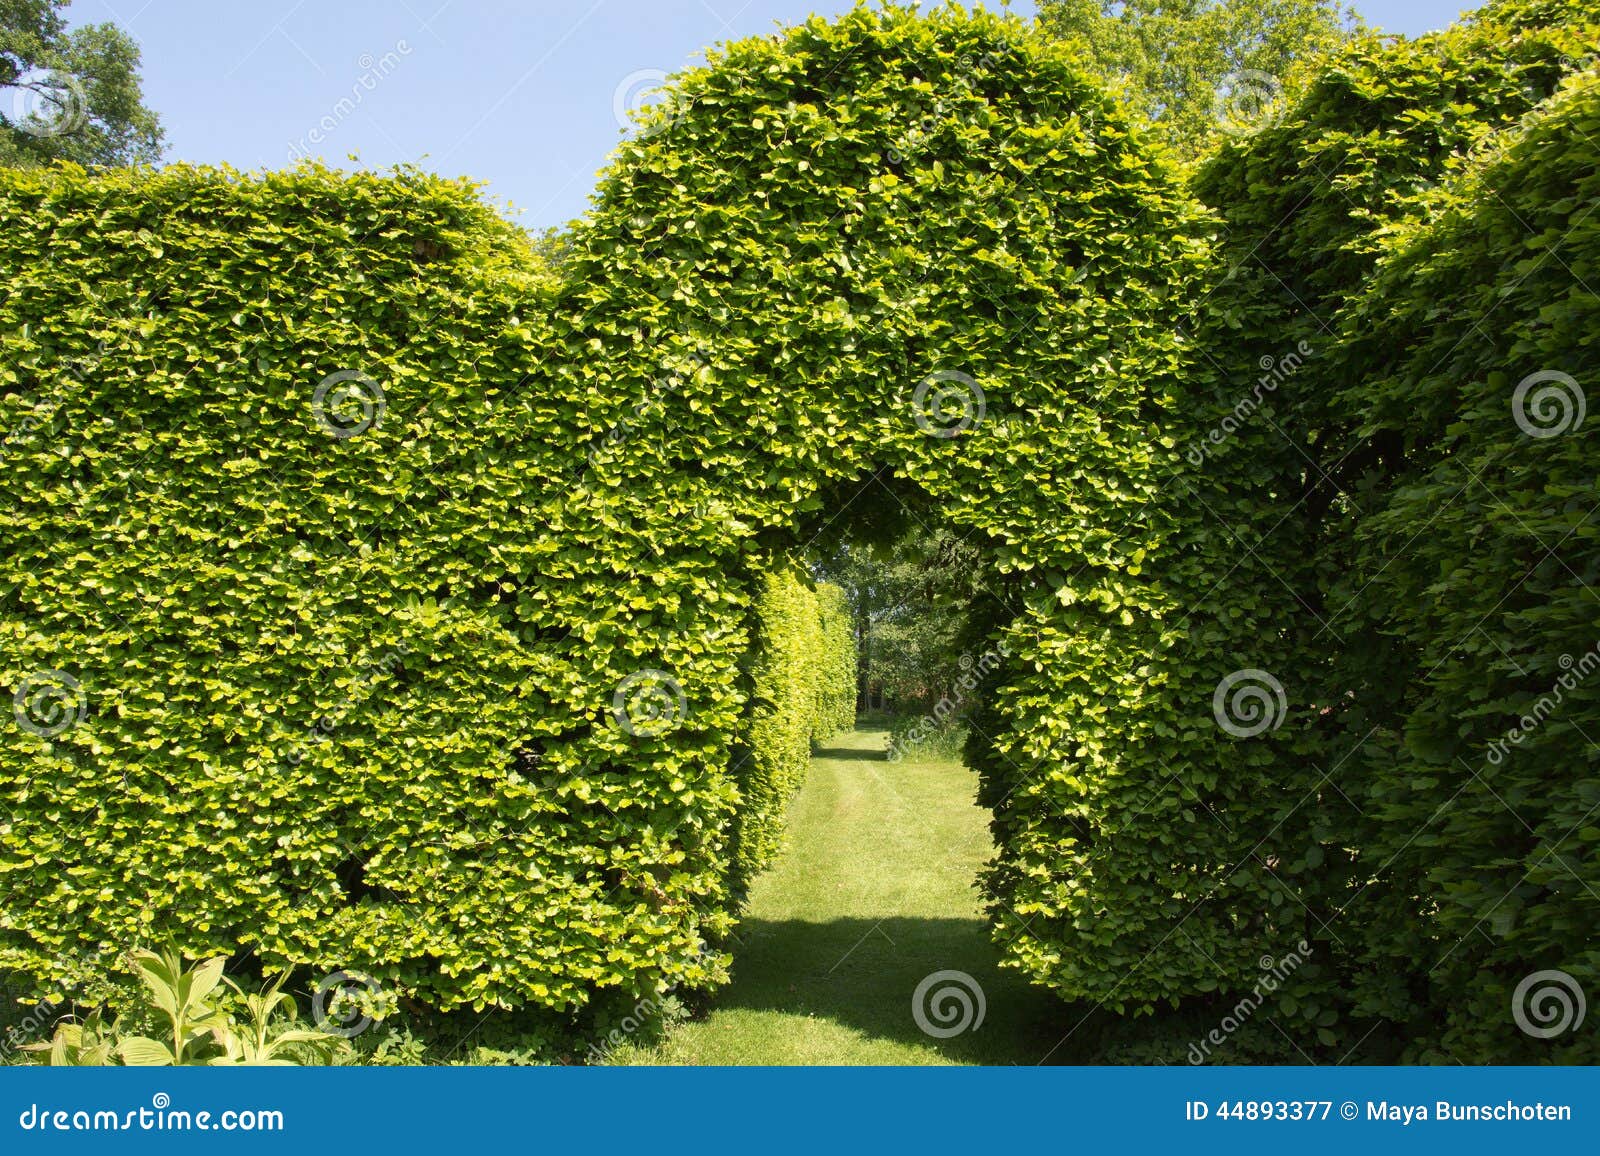 lexicon Overgave Tentakel Natuurlijke Boog in Een Haag Stock Afbeelding - Image of achtergrond,  tuinieren: 44893377